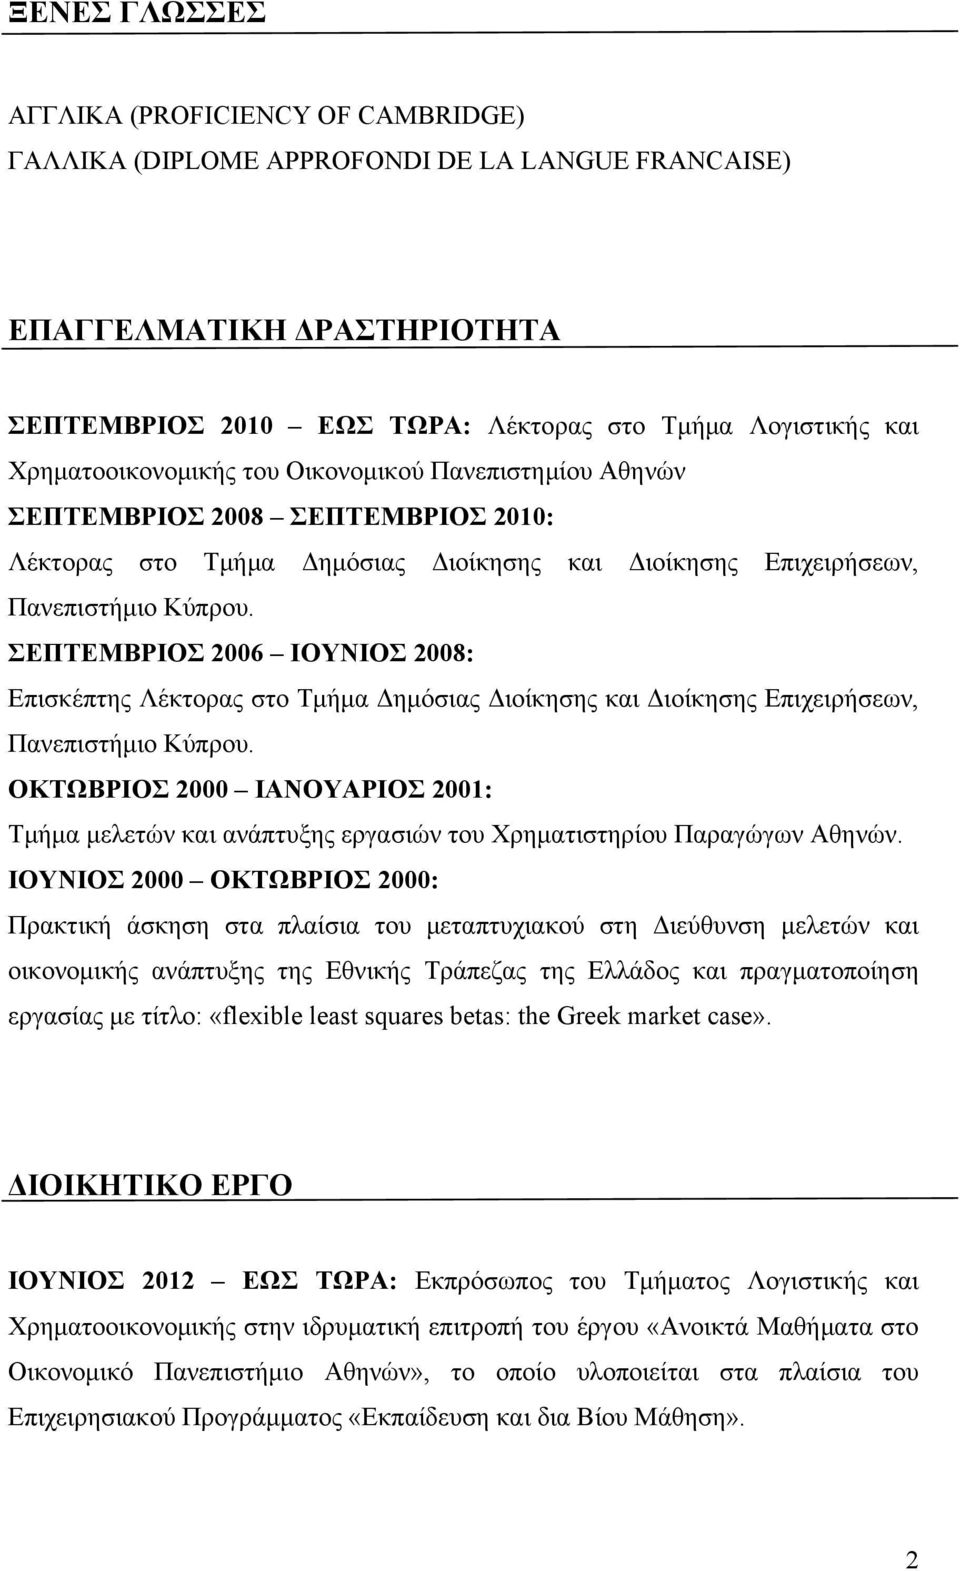 ΣΕΠΤΕΜΒΡΙΟΣ 2006 ΙΟΥΝΙΟΣ 2008: Επισκέπτης Λέκτορας στο Τμήμα Δημόσιας Διοίκησης και Διοίκησης Επιχειρήσεων, Πανεπιστήμιο Κύπρου.